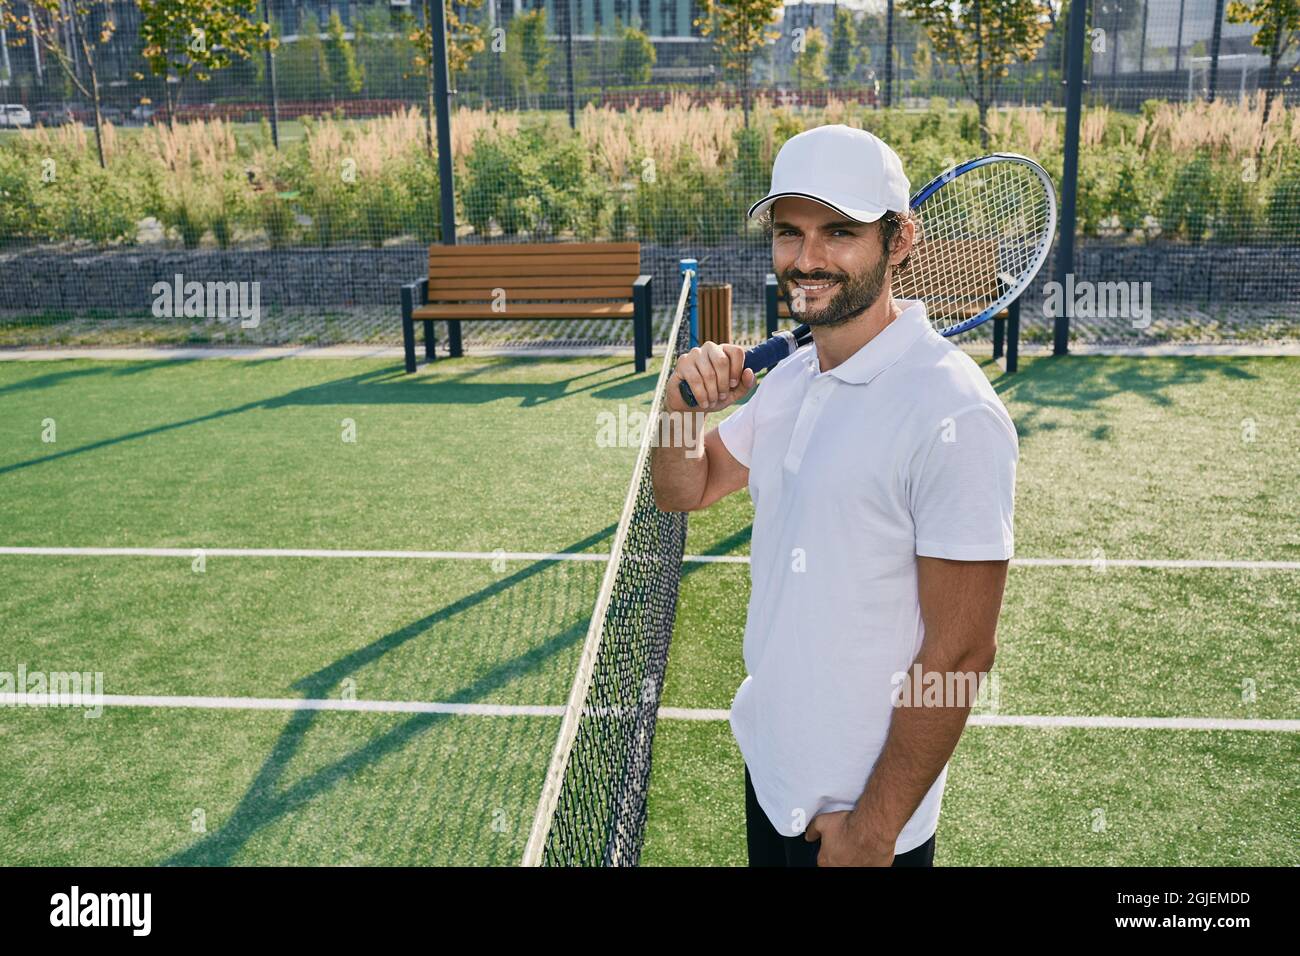 Professioneller Tennisspieler mit Schläger, der in der Nähe des Netzes auf dem Rasen-Tennisplatz posiert Stockfoto